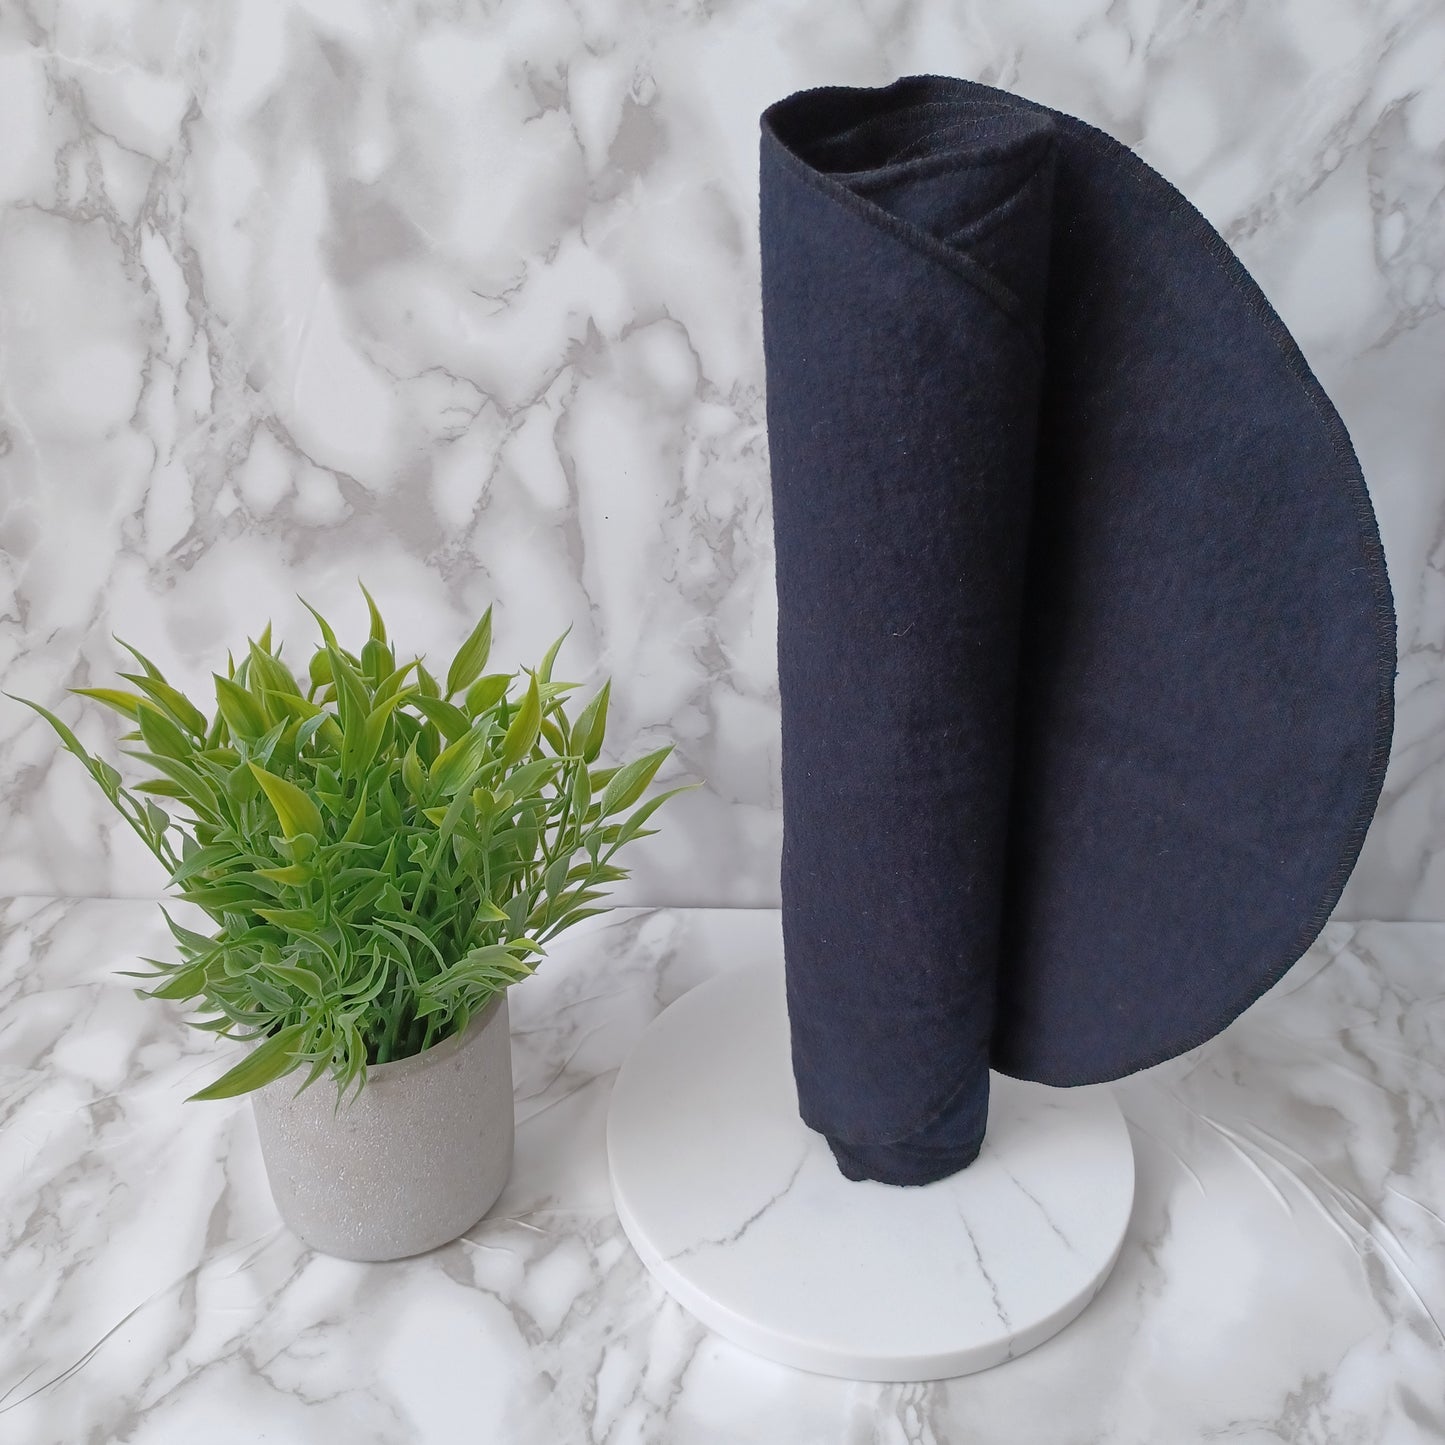 Serviettes de table et Essuie-tout-NOIR/Napkins and Paperless towels BLACK